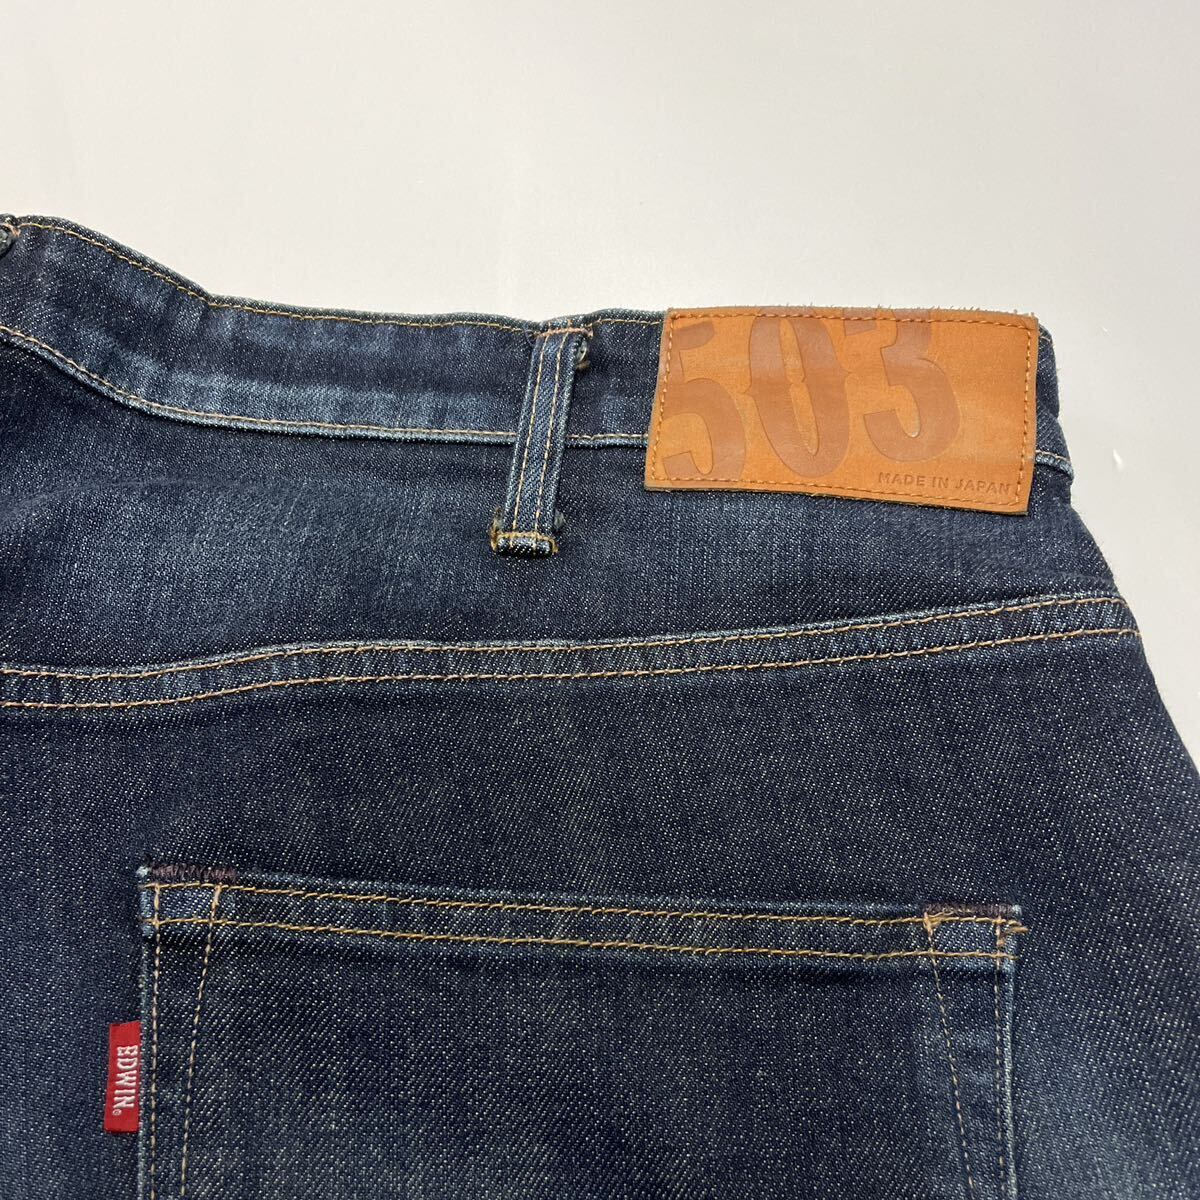 EDWIN Edwin 503 E50303 постоянный распорка стрейч джинсы Denim брюки W42 сделано в Японии большой размер 